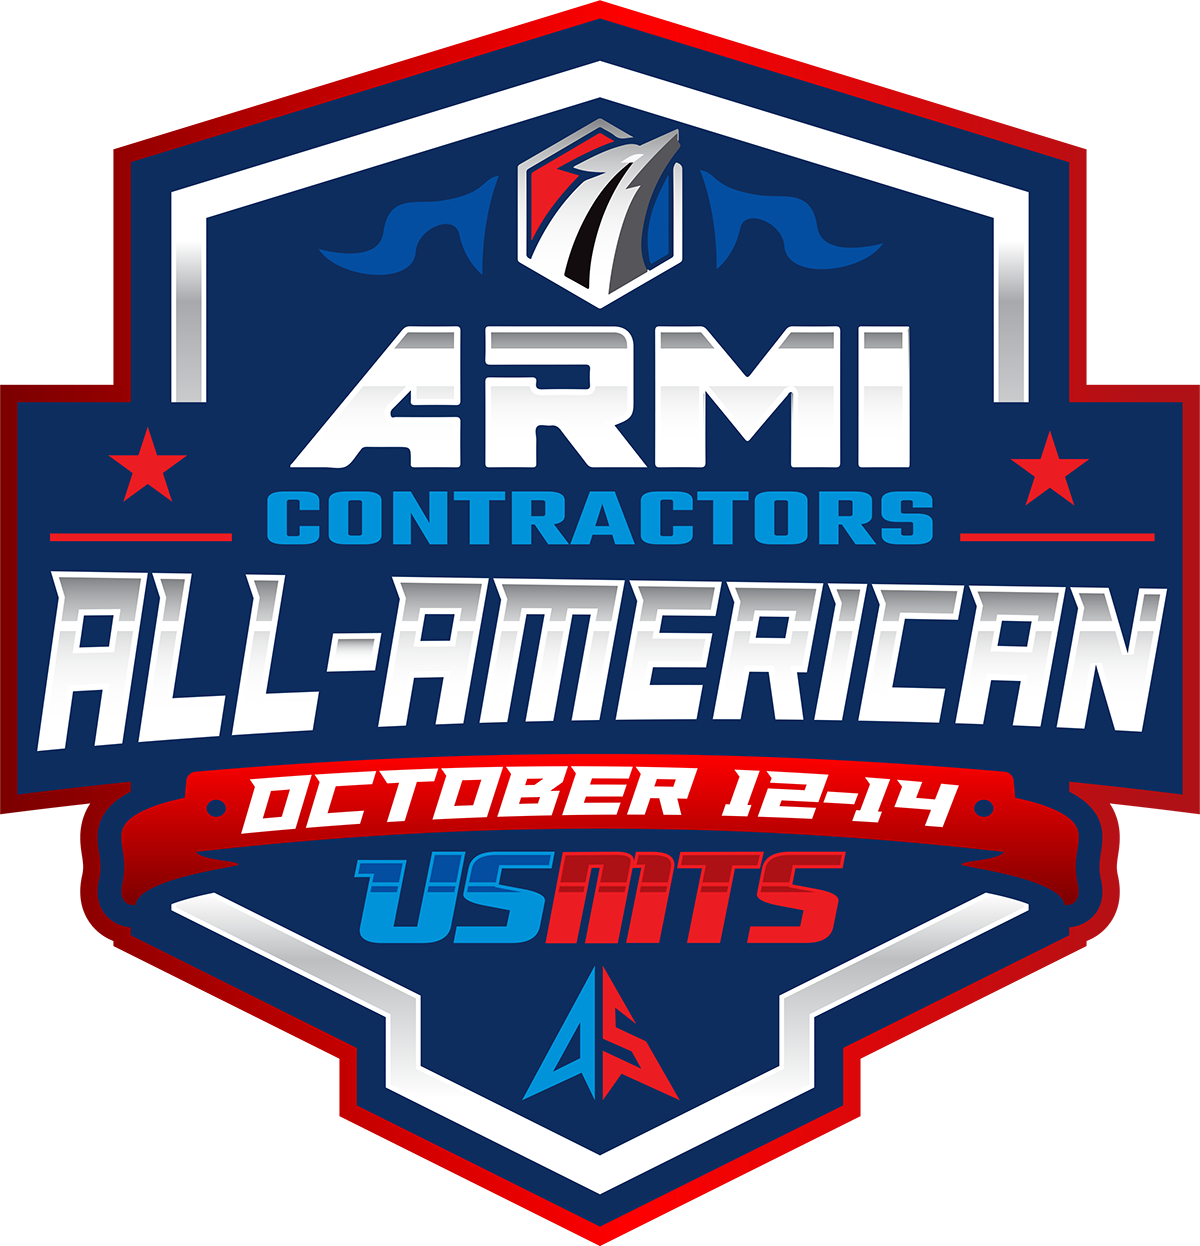 Inaugural ARMI Contractors USMTS All-American